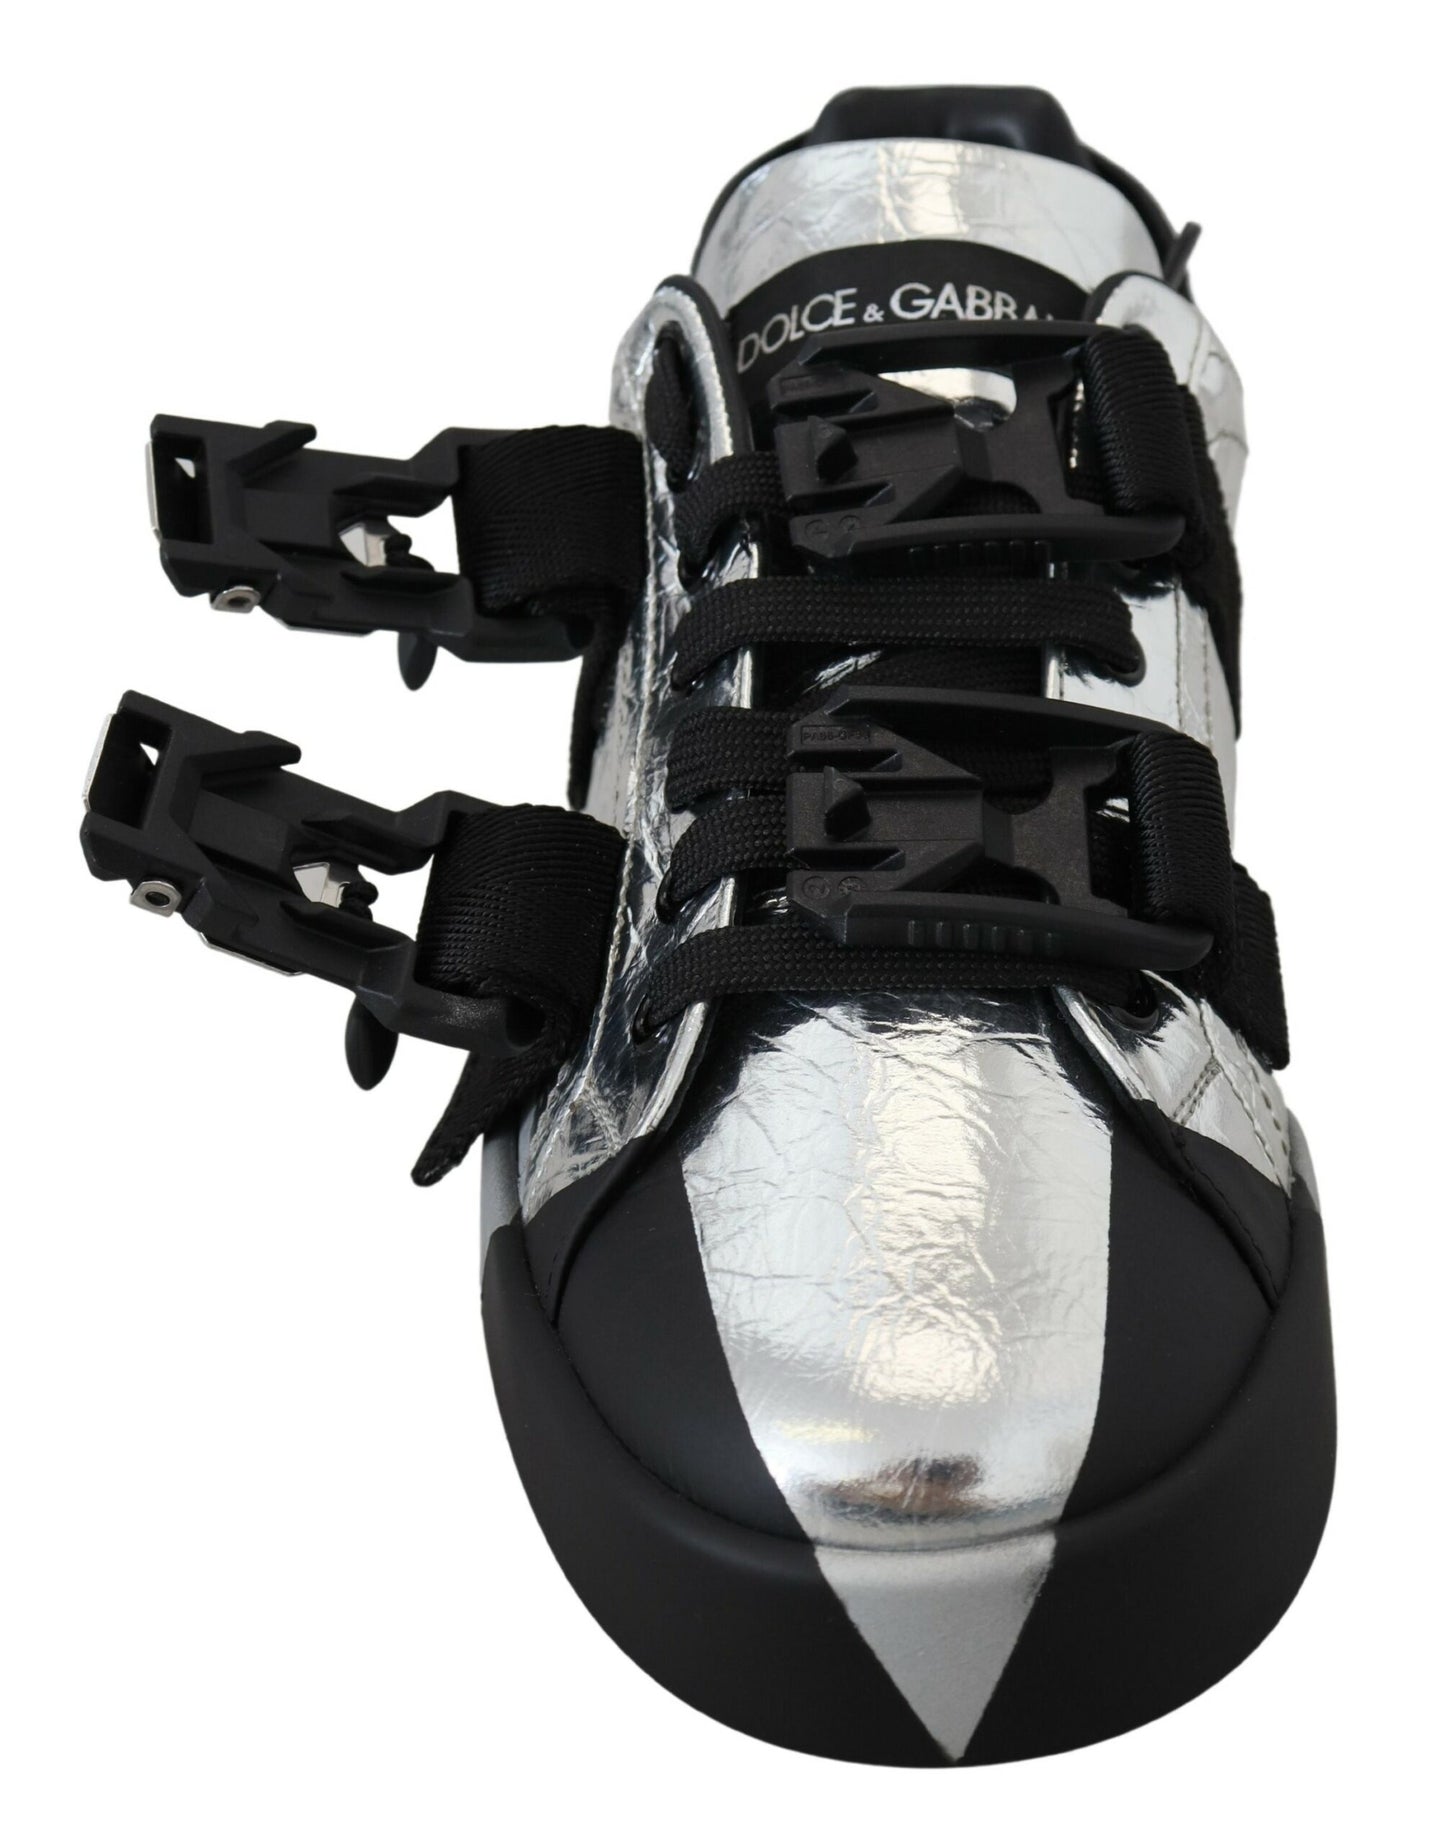 Dolce & Gabbana Black Silver in pelle Sneaker Top Sneaker Casual